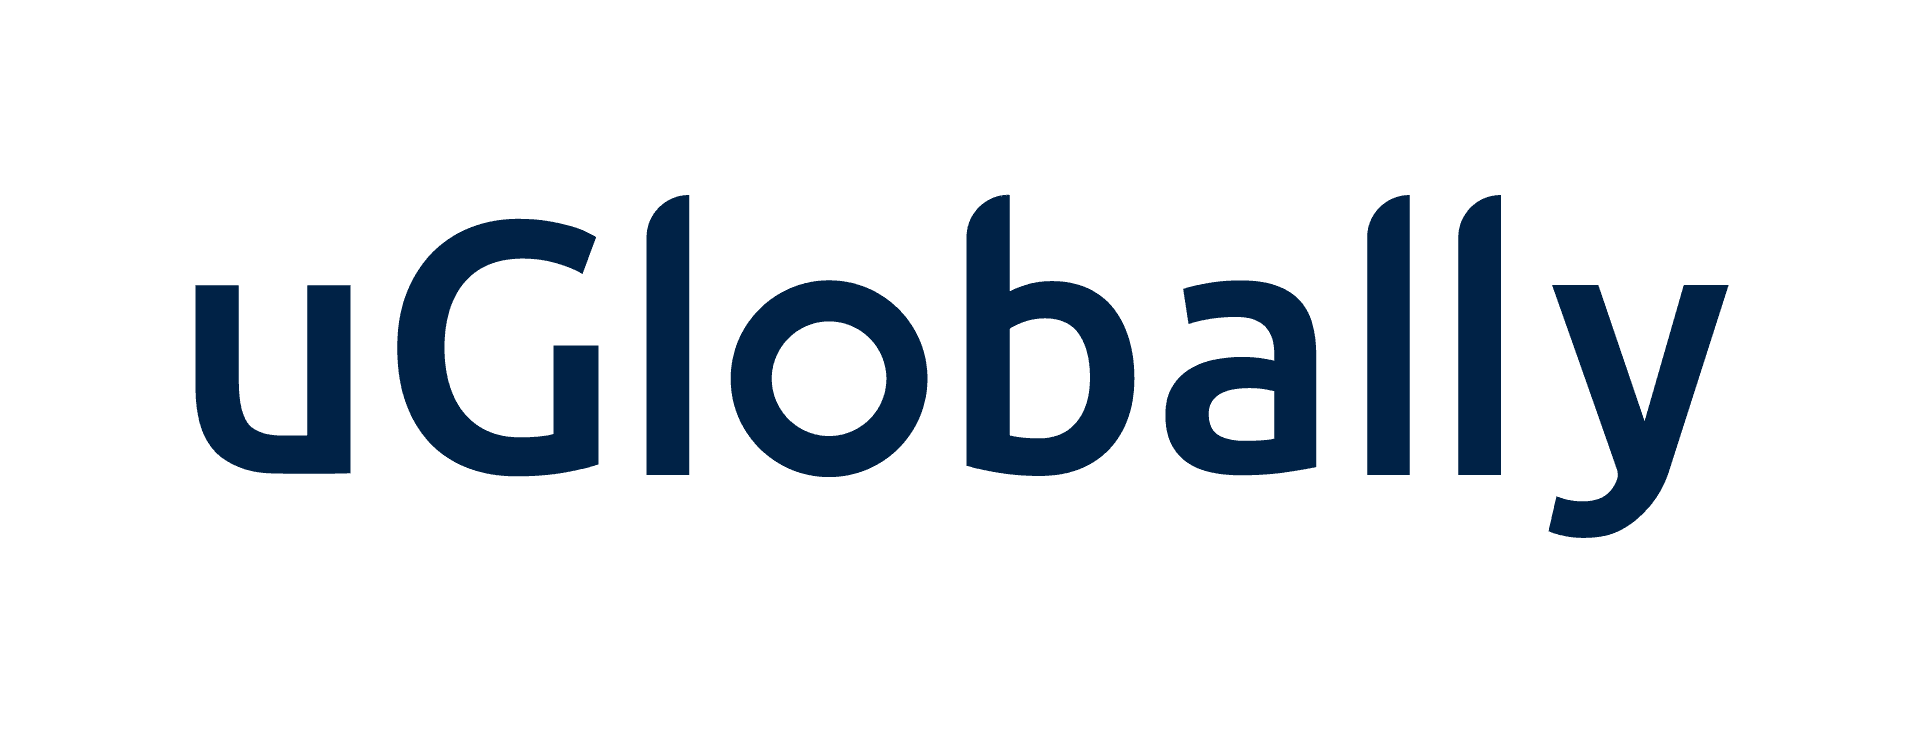 uGlobally-logo